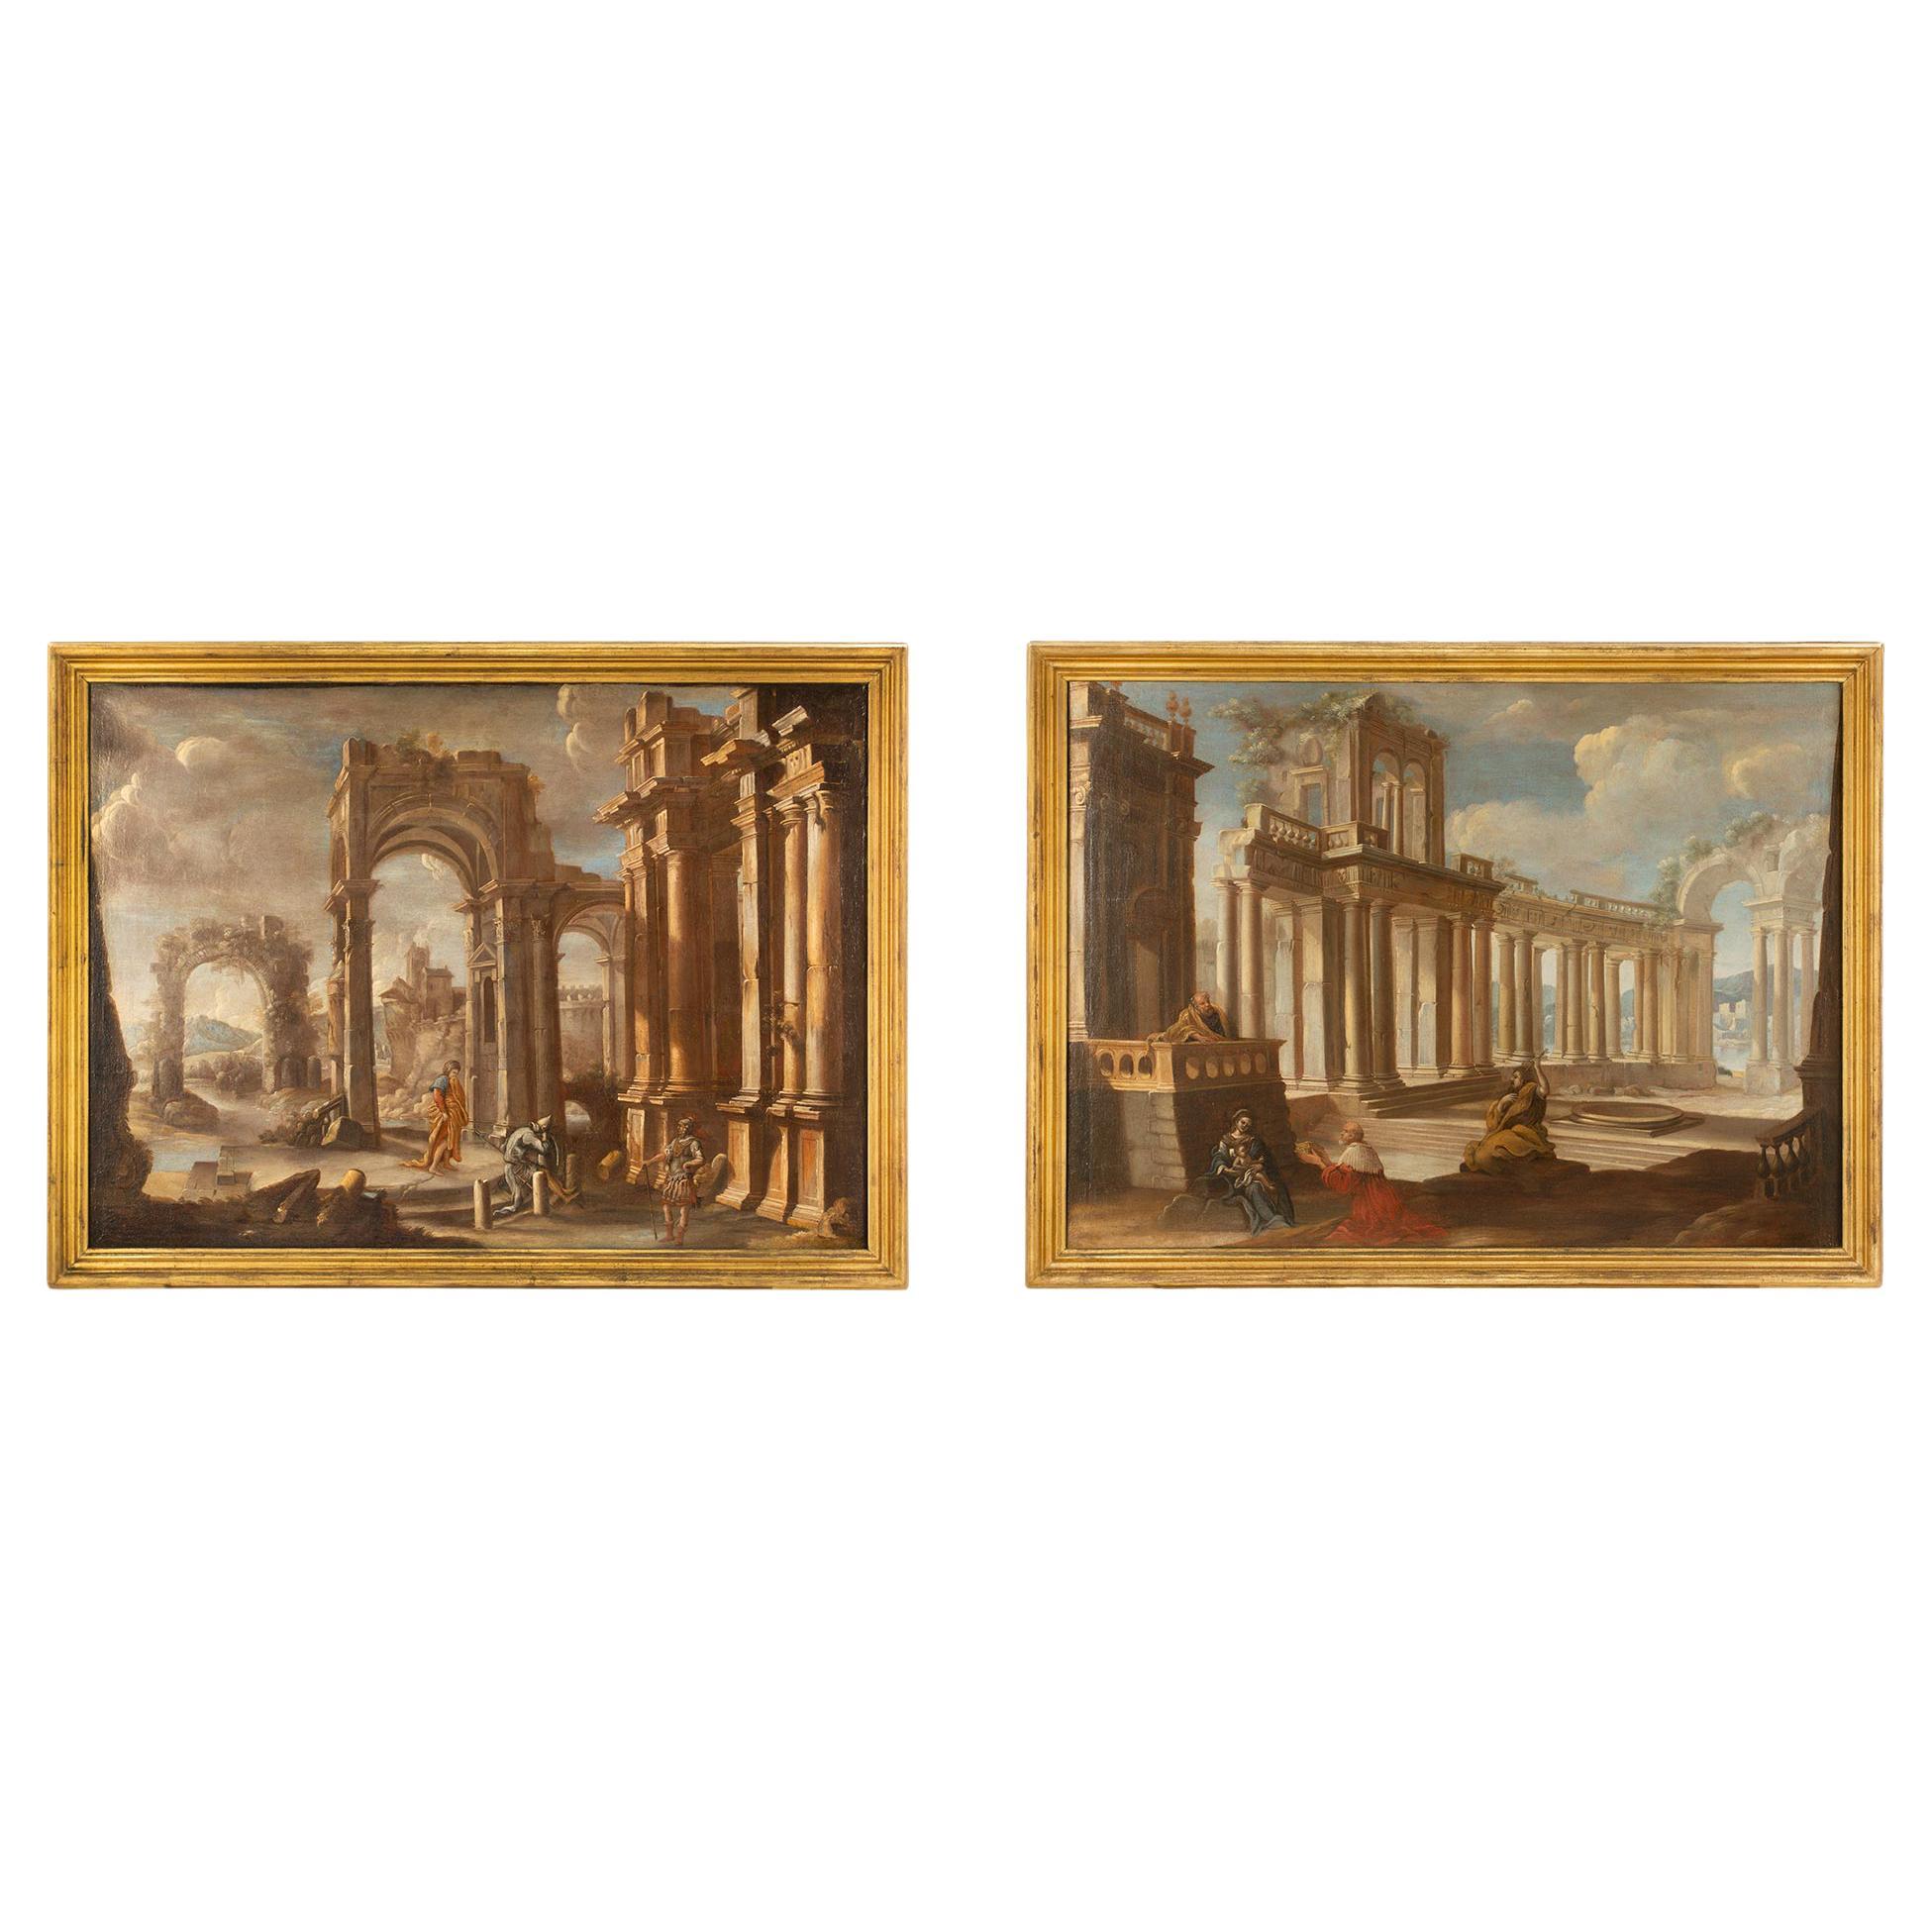 Paire de peintures à l'huile sur toile italiennes de maîtres anciens du milieu du XVIIIe siècle représentant des ruines